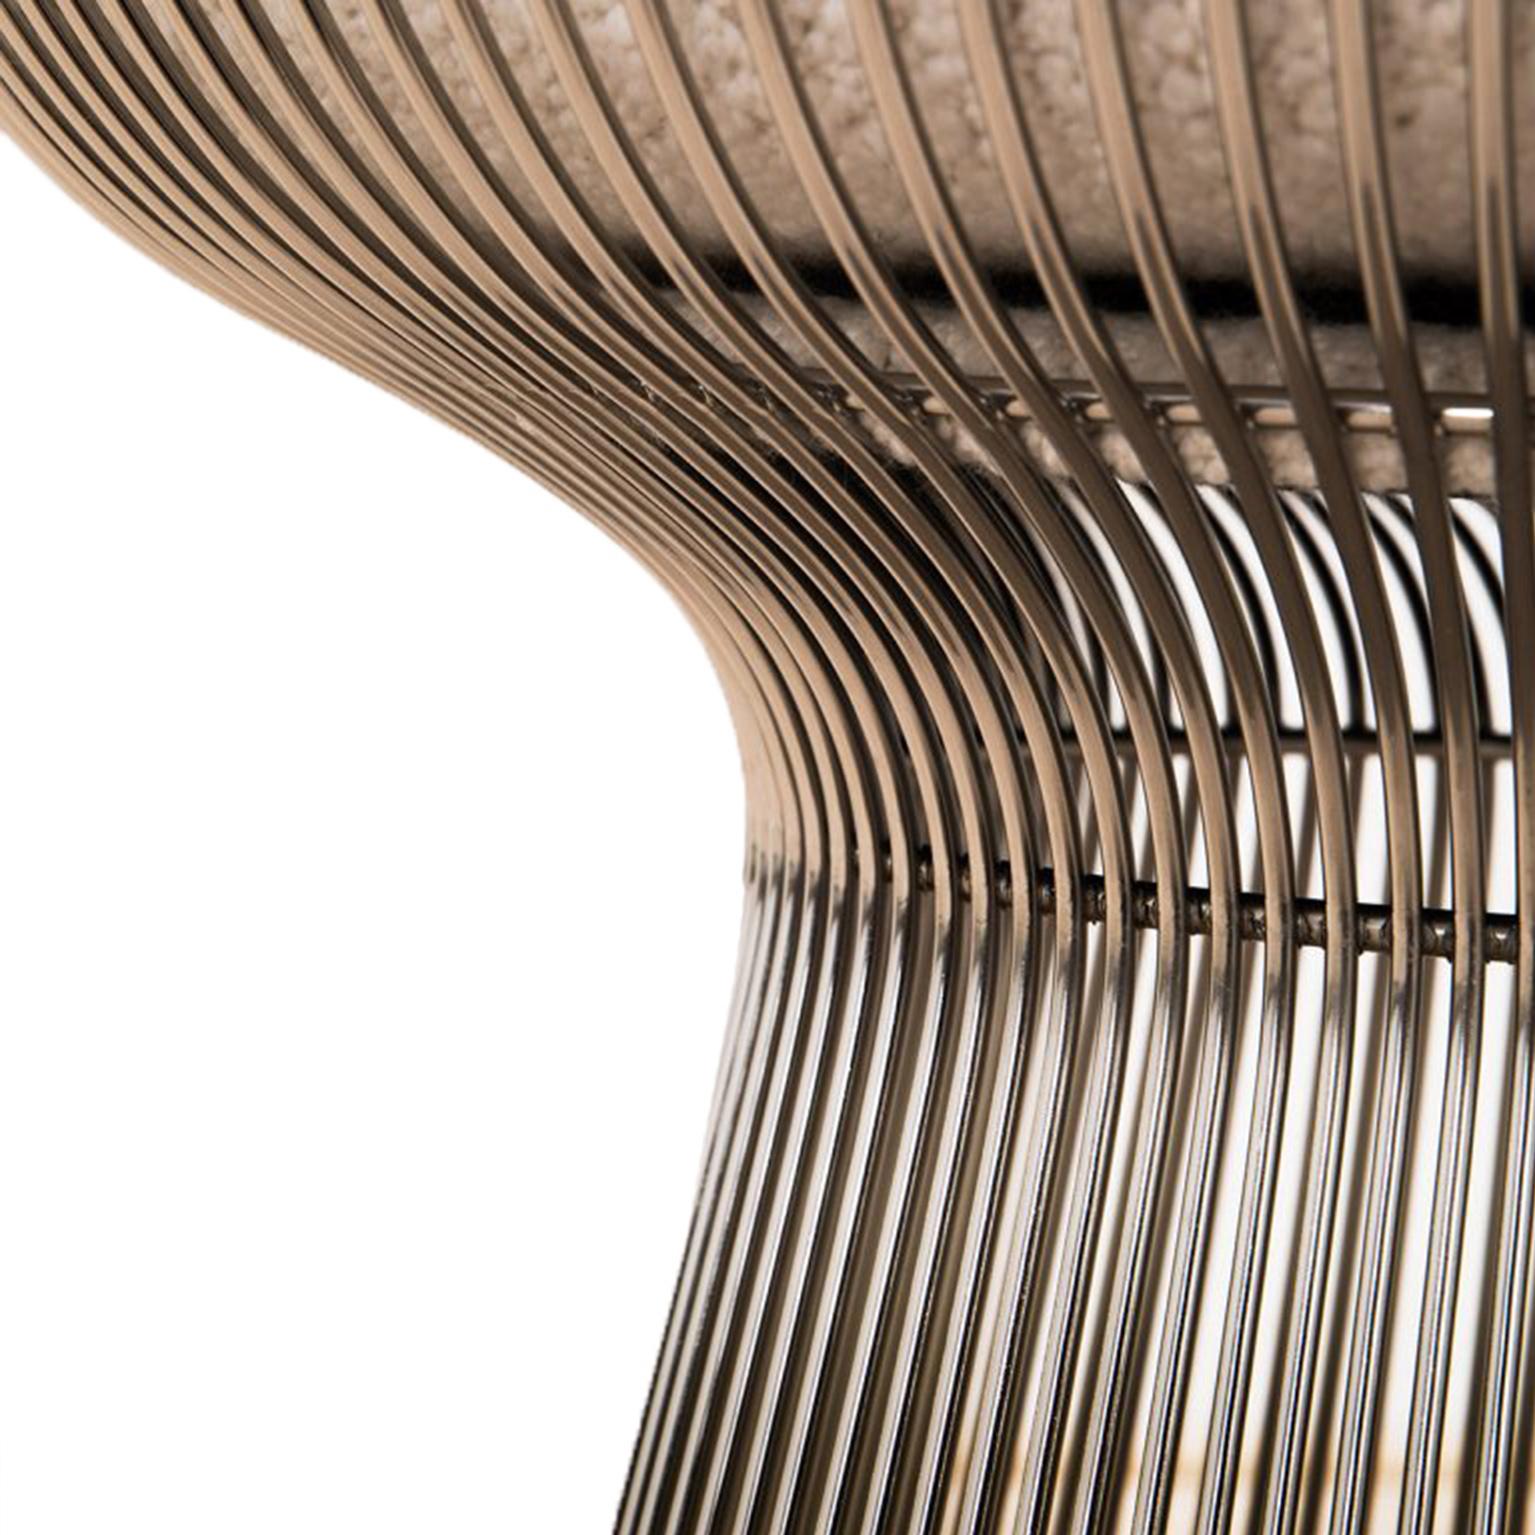 Ein Paar Stühle, entworfen von Warren Platner und herausgegeben von Knoll. Struktur mit einer skulpturalen Form aus Stahldraht. Gepolstert mit Bouclé-Stoff. USA 60er Jahre.

Abmessungen: B 93 x T 79 x H 79 cm